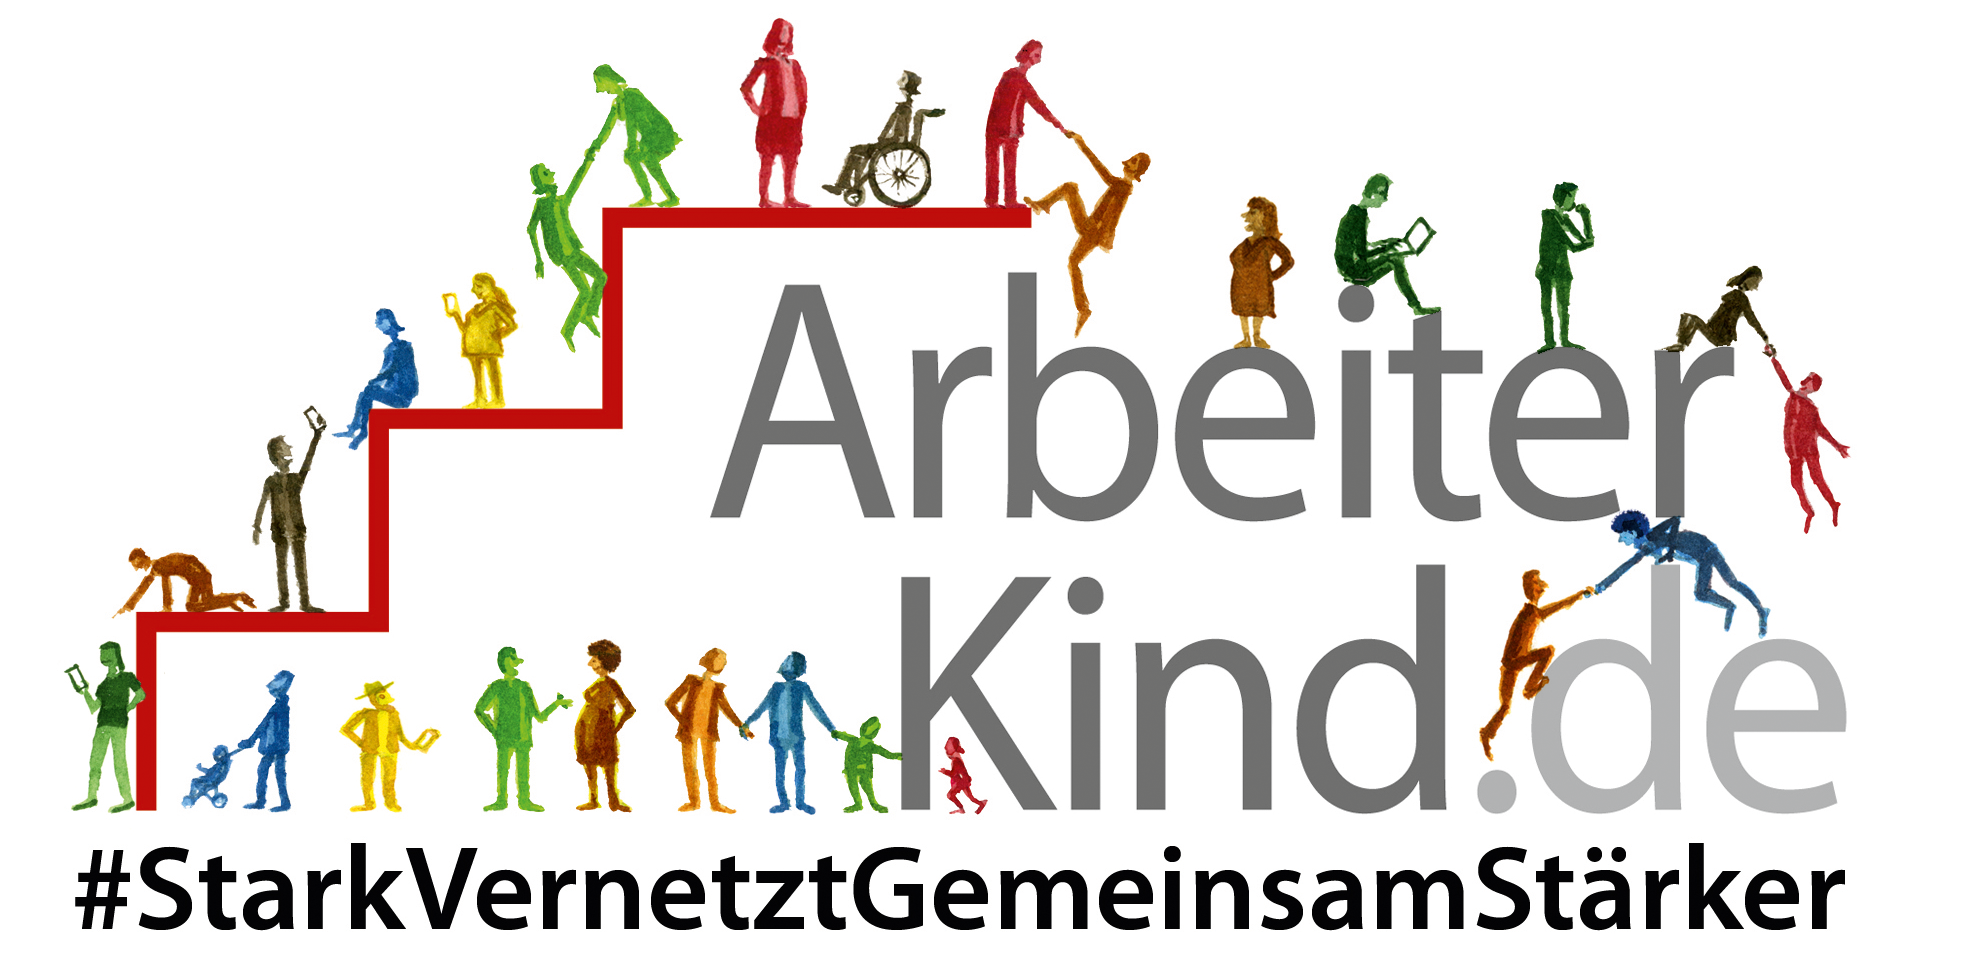 ArbeiterKind.de Nordrhein-Westfalen Logo